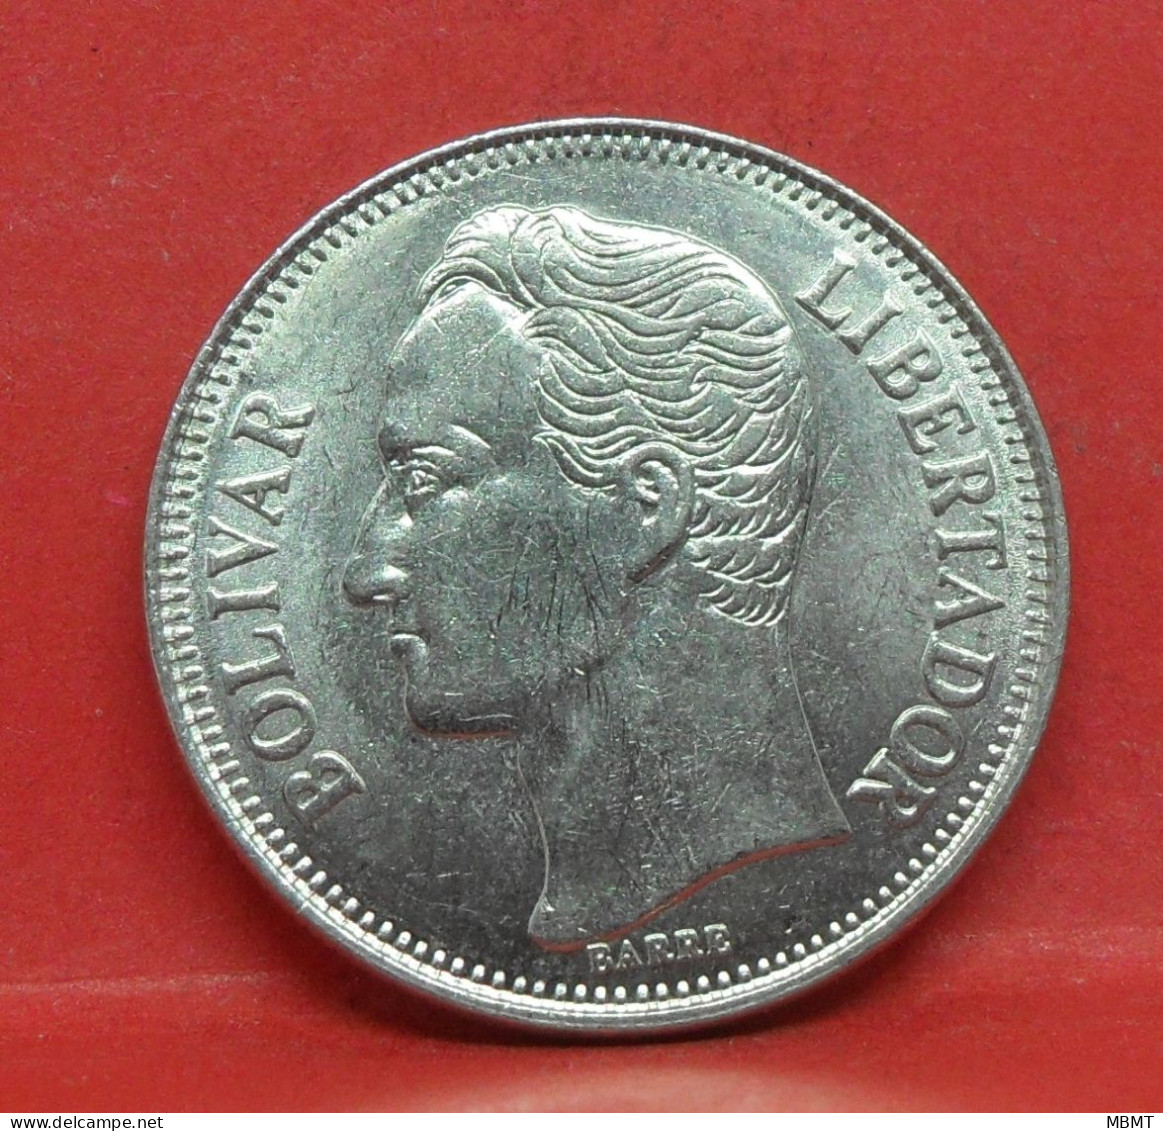 1 Bolivar 1990 - TTB - Pièce De Monnaie Venezuela - Article N°5540 - Venezuela